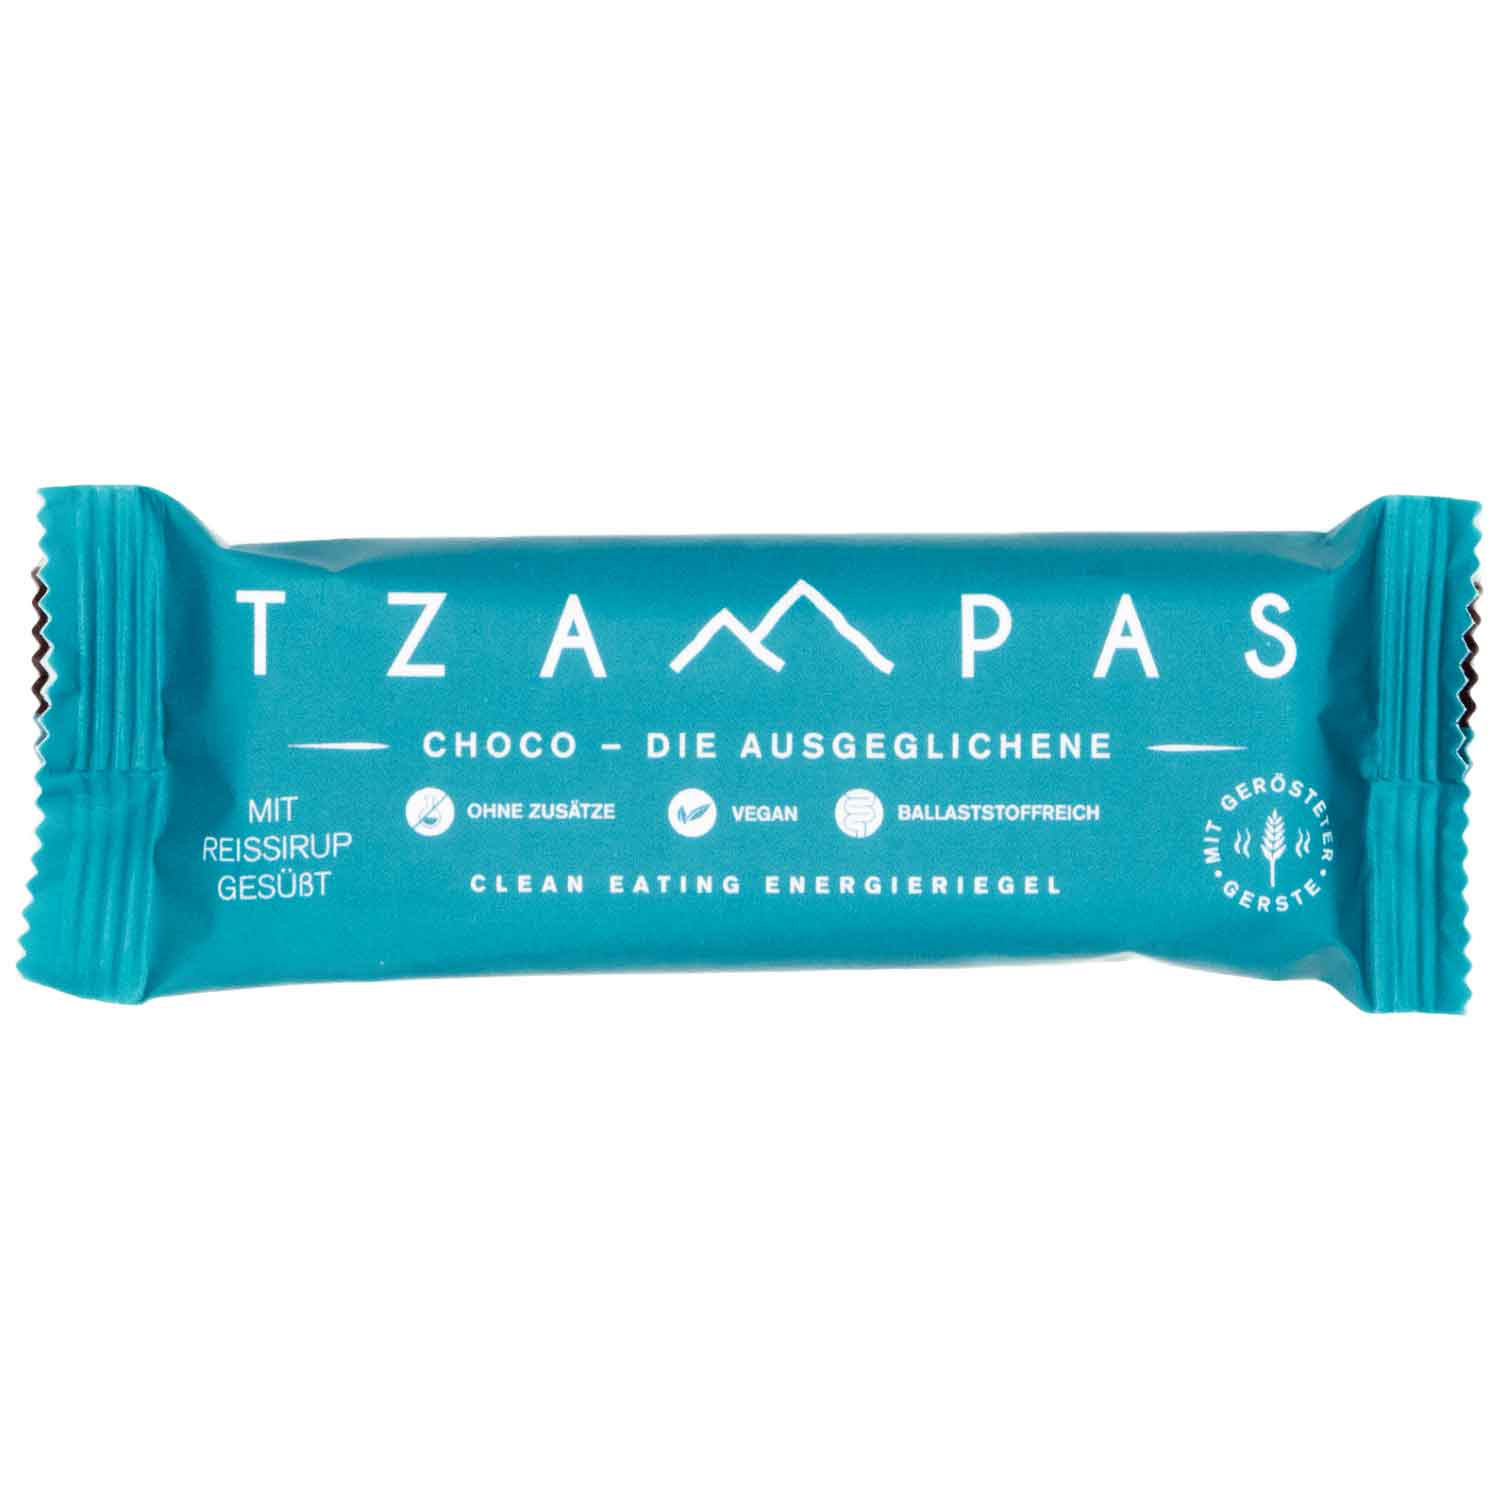 Produktbild von TZAMPAS BIO Choco - Die Ausgeglichene - Energieriegel - 40g